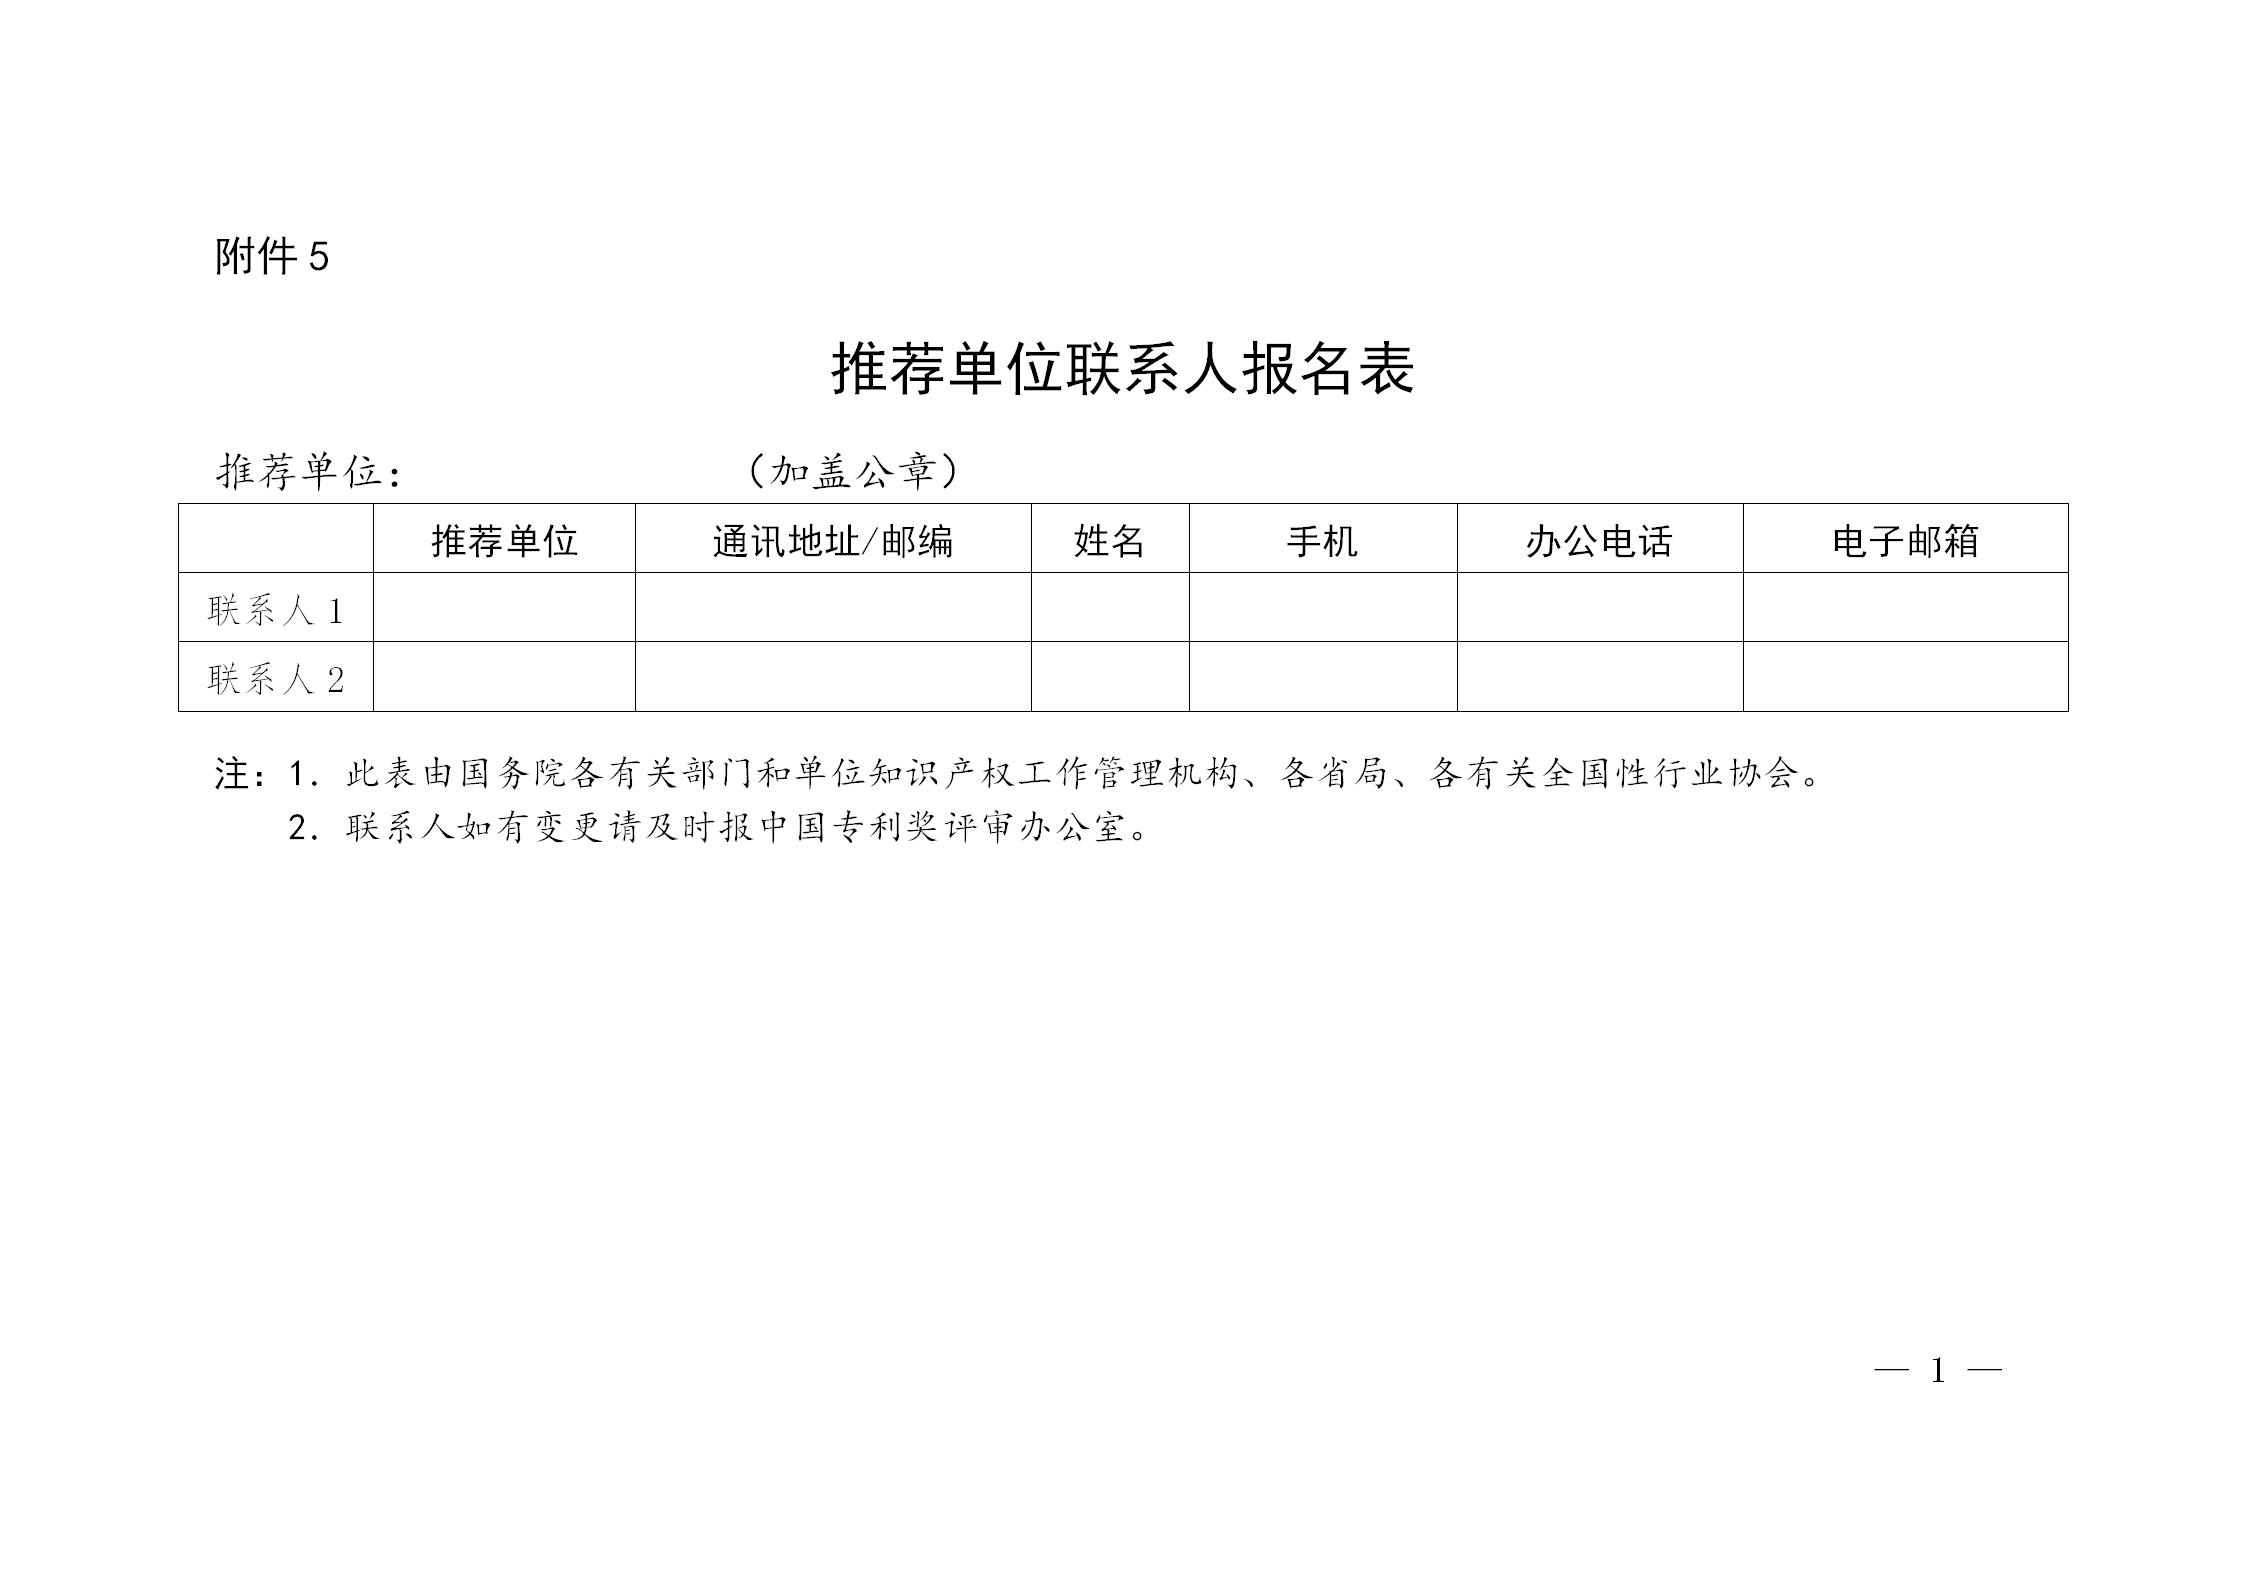 通知！第二十三届中国专利奖评选工作启动！